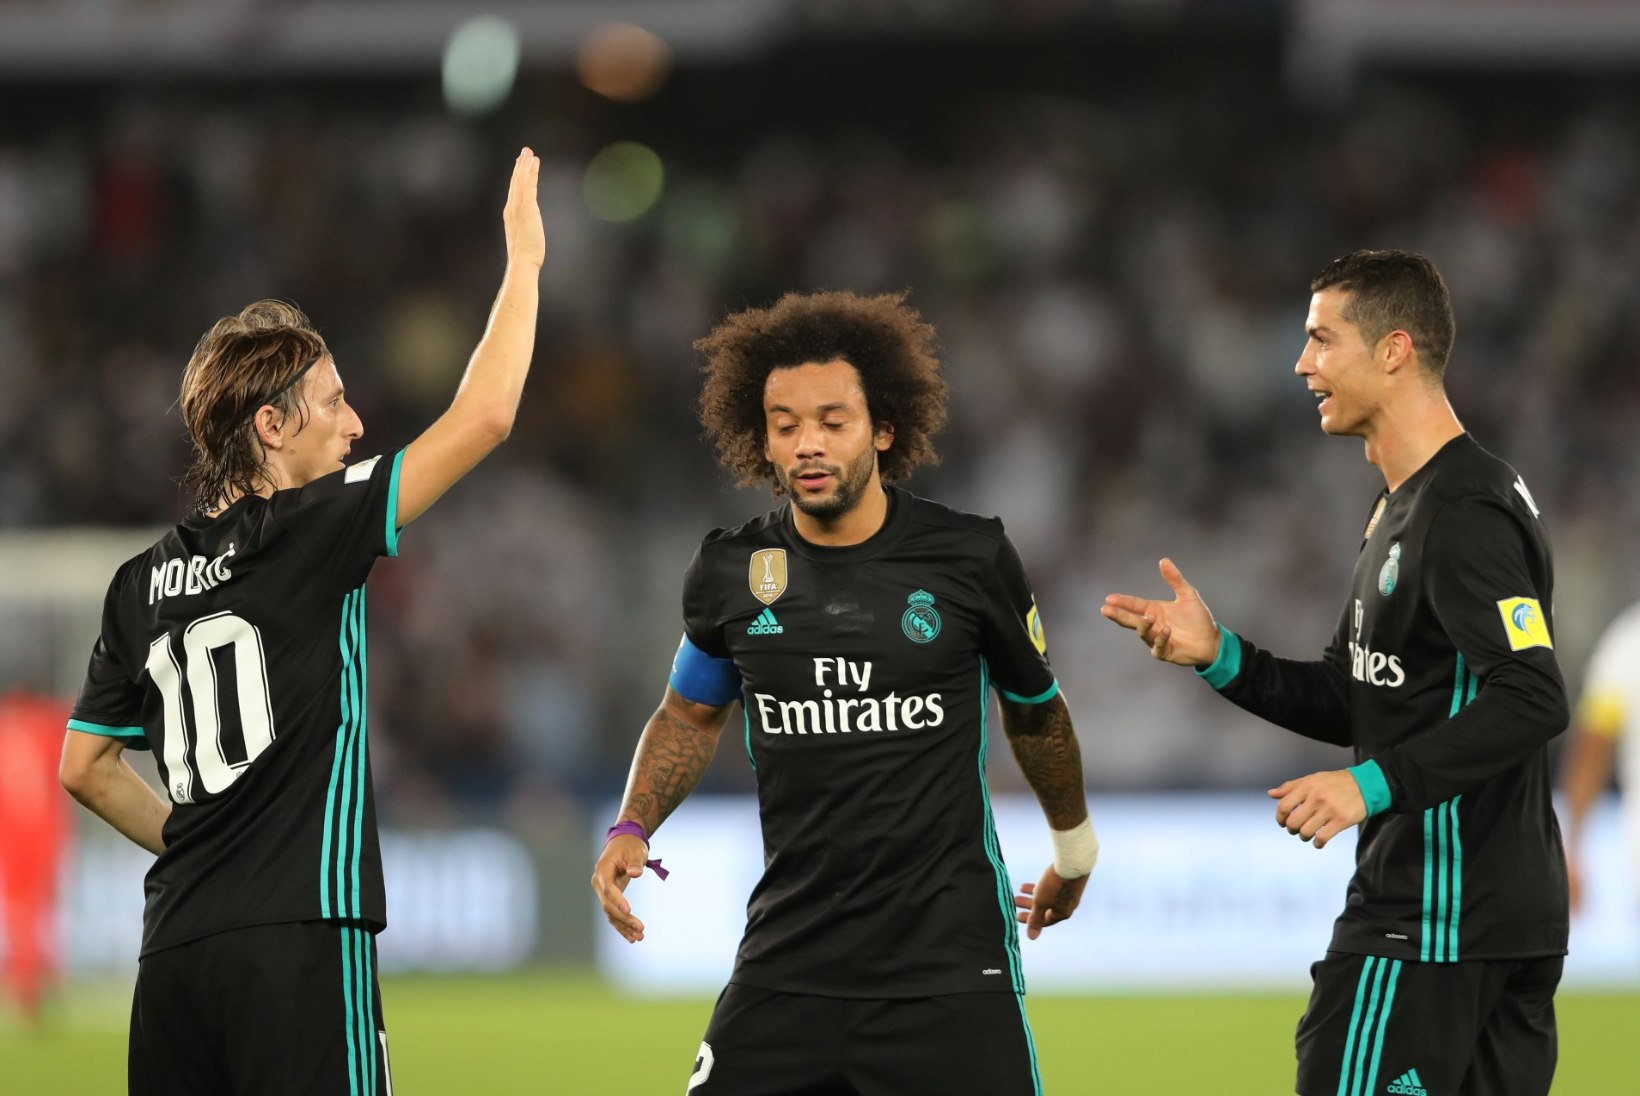 NII SEE JUHTUS | Madridi Real on maailmameister, talisport pakkus vastakaid emotsioone